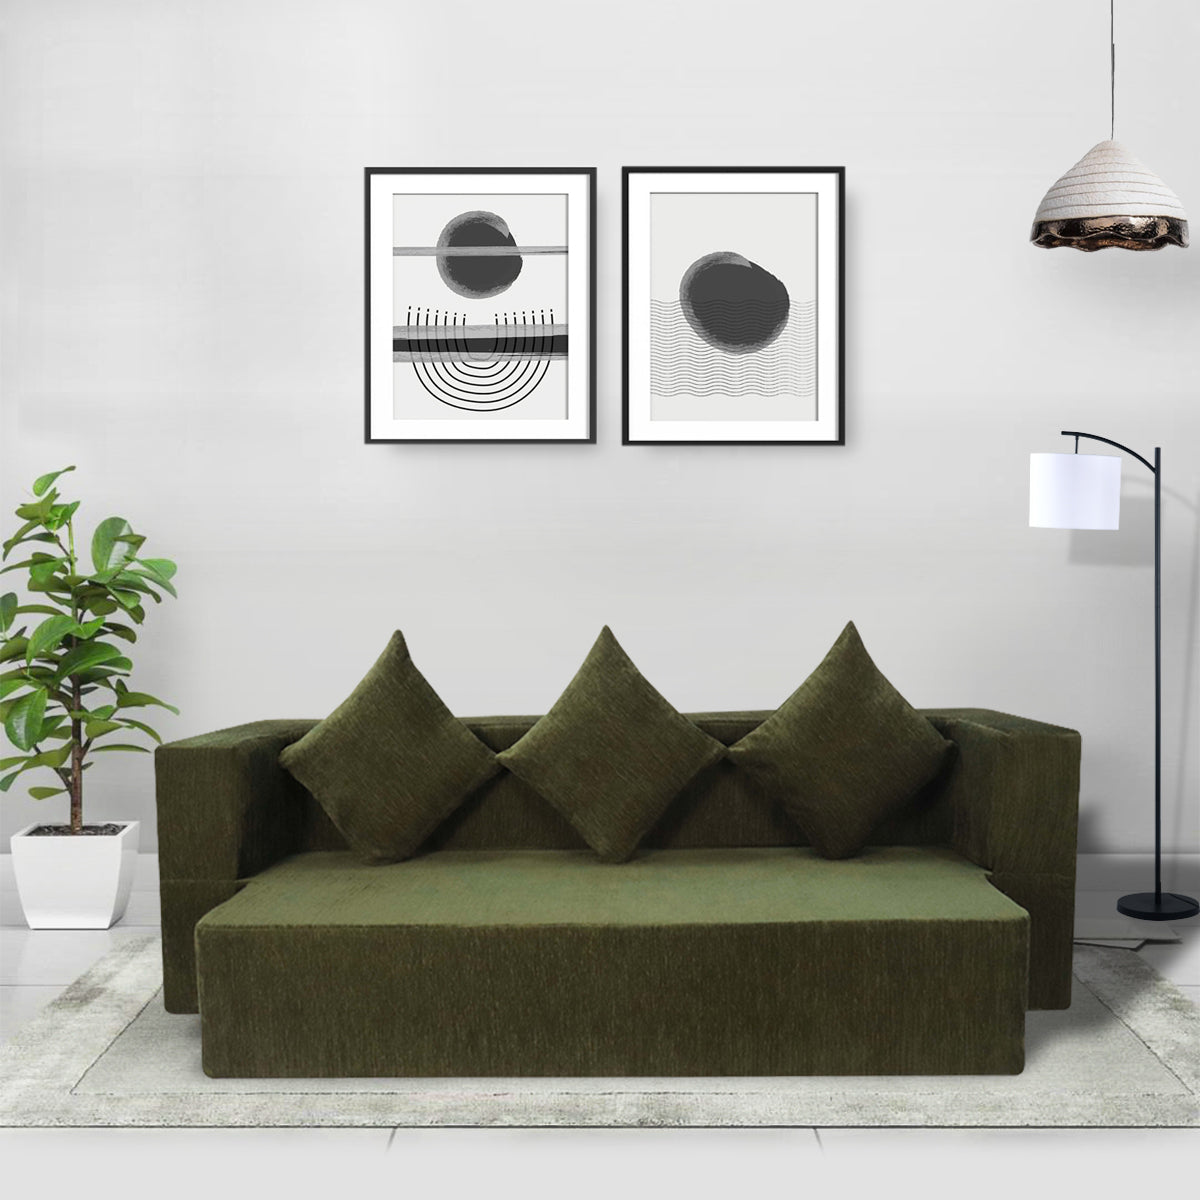 Emerald Green Chenille Molfino Fabric (72"x44'x10") FlipperX Sofa Bed